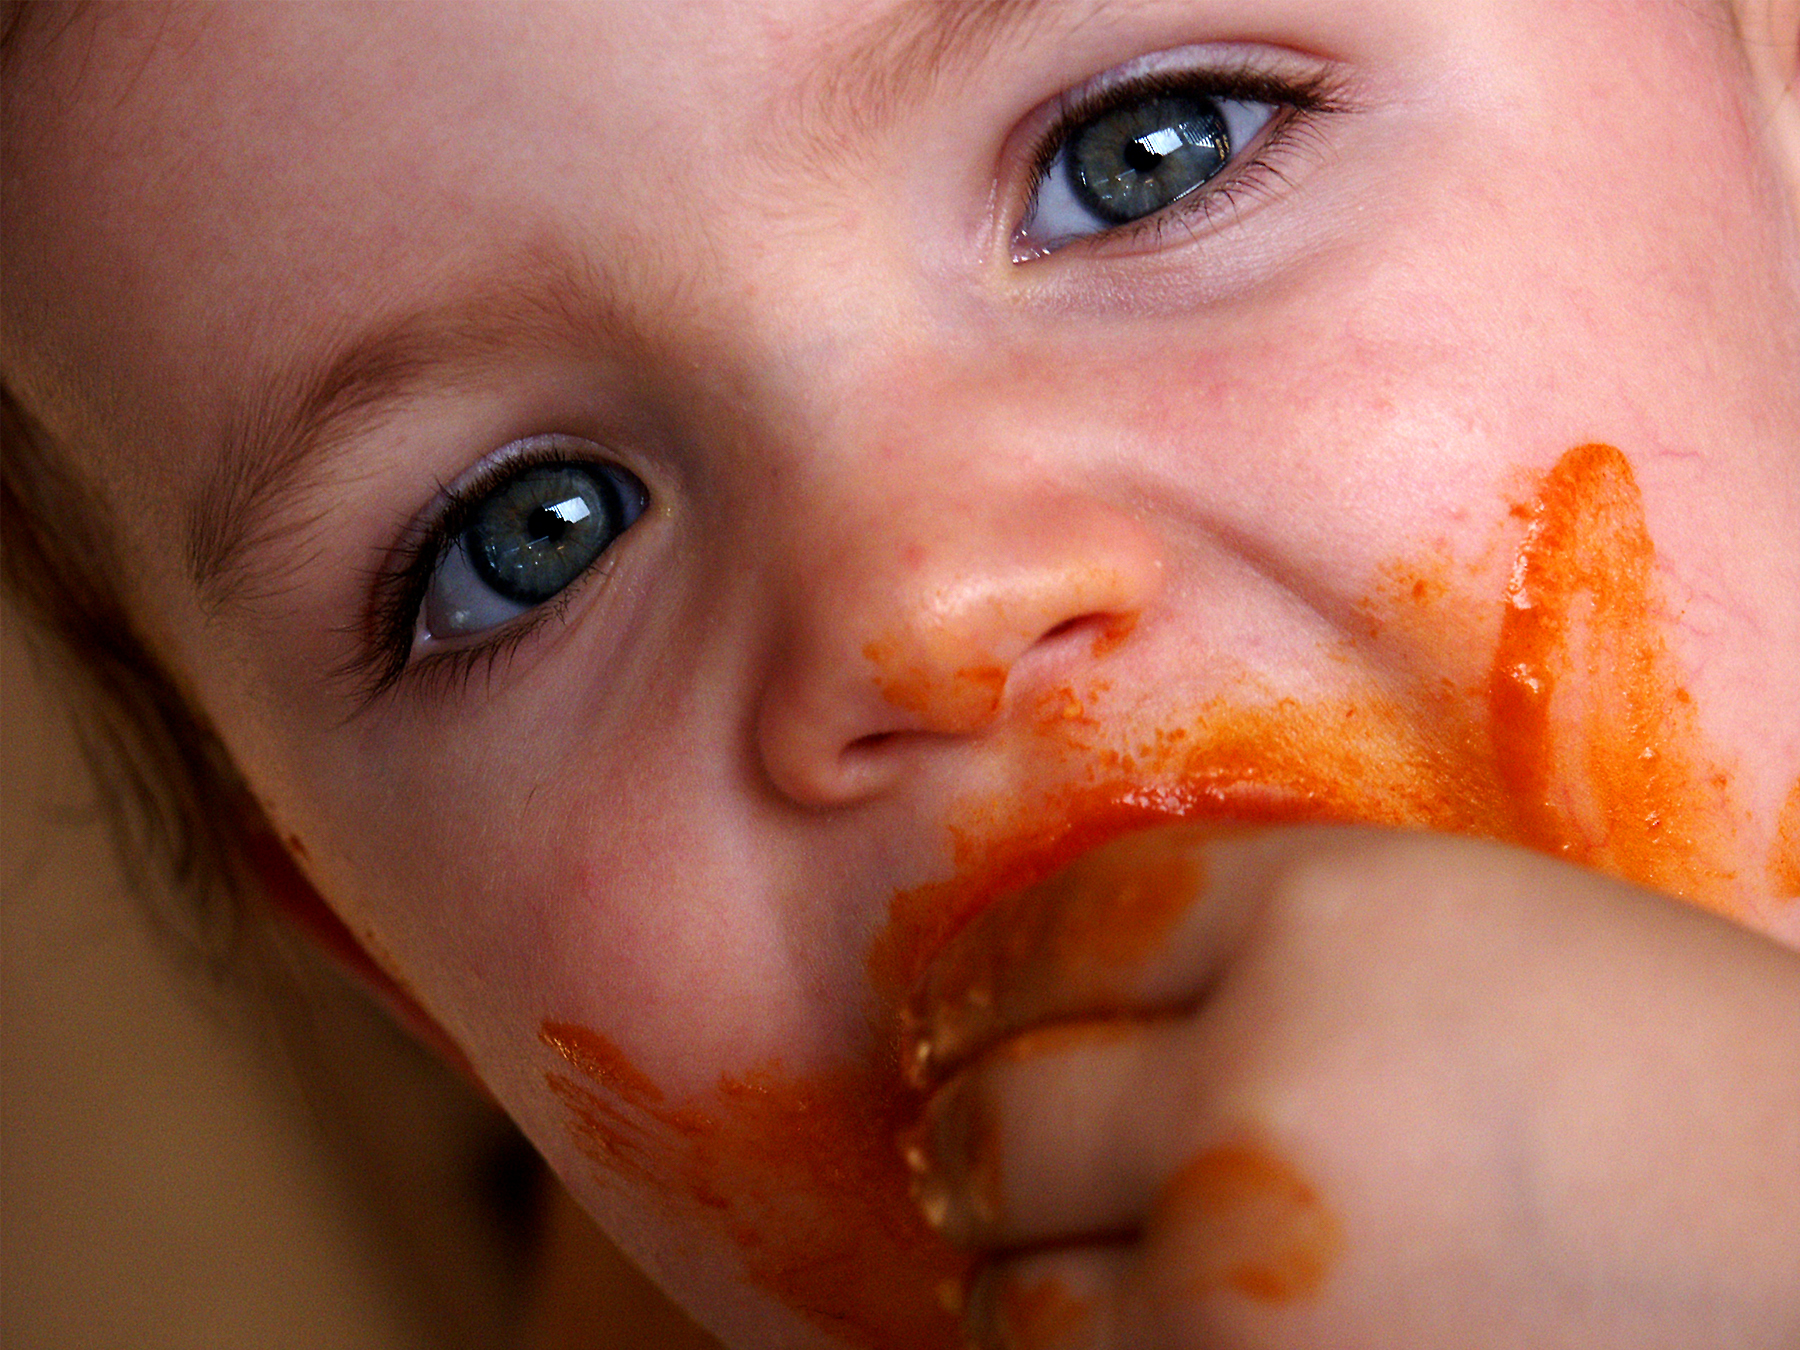 Reguli de baza pentru alimentatia copilului de la 0 la 3 ani